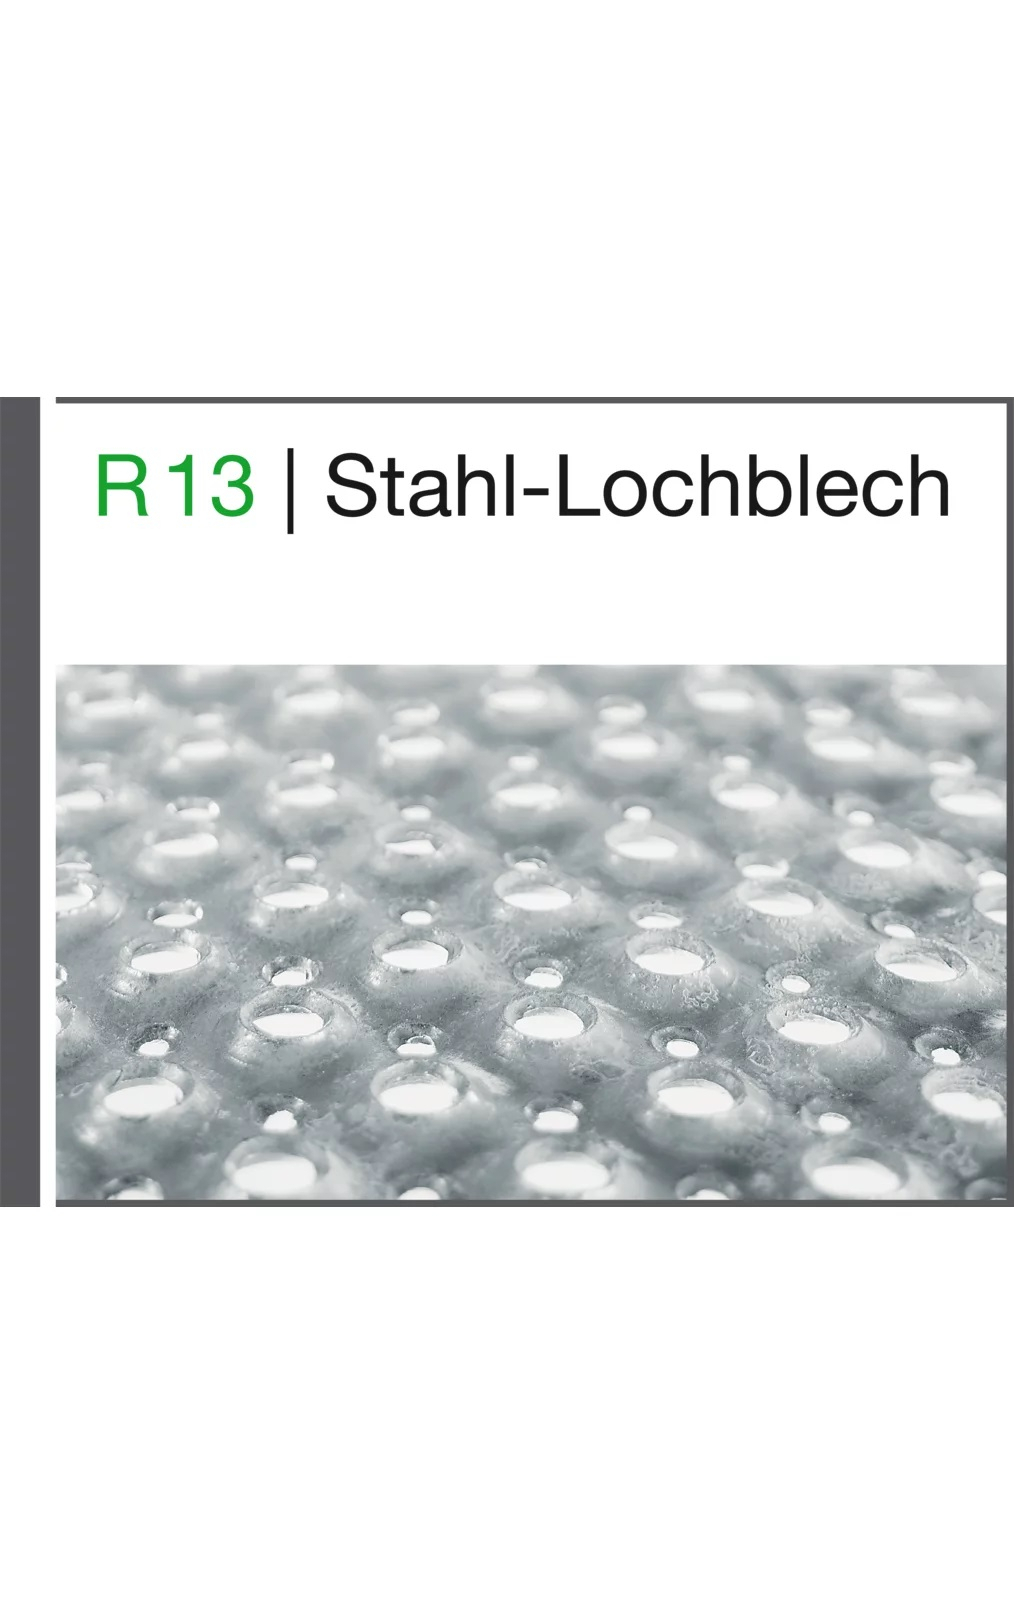 Mehrpreis pro Stufenbelag Stahl-Lochblech, Breite 800 mm